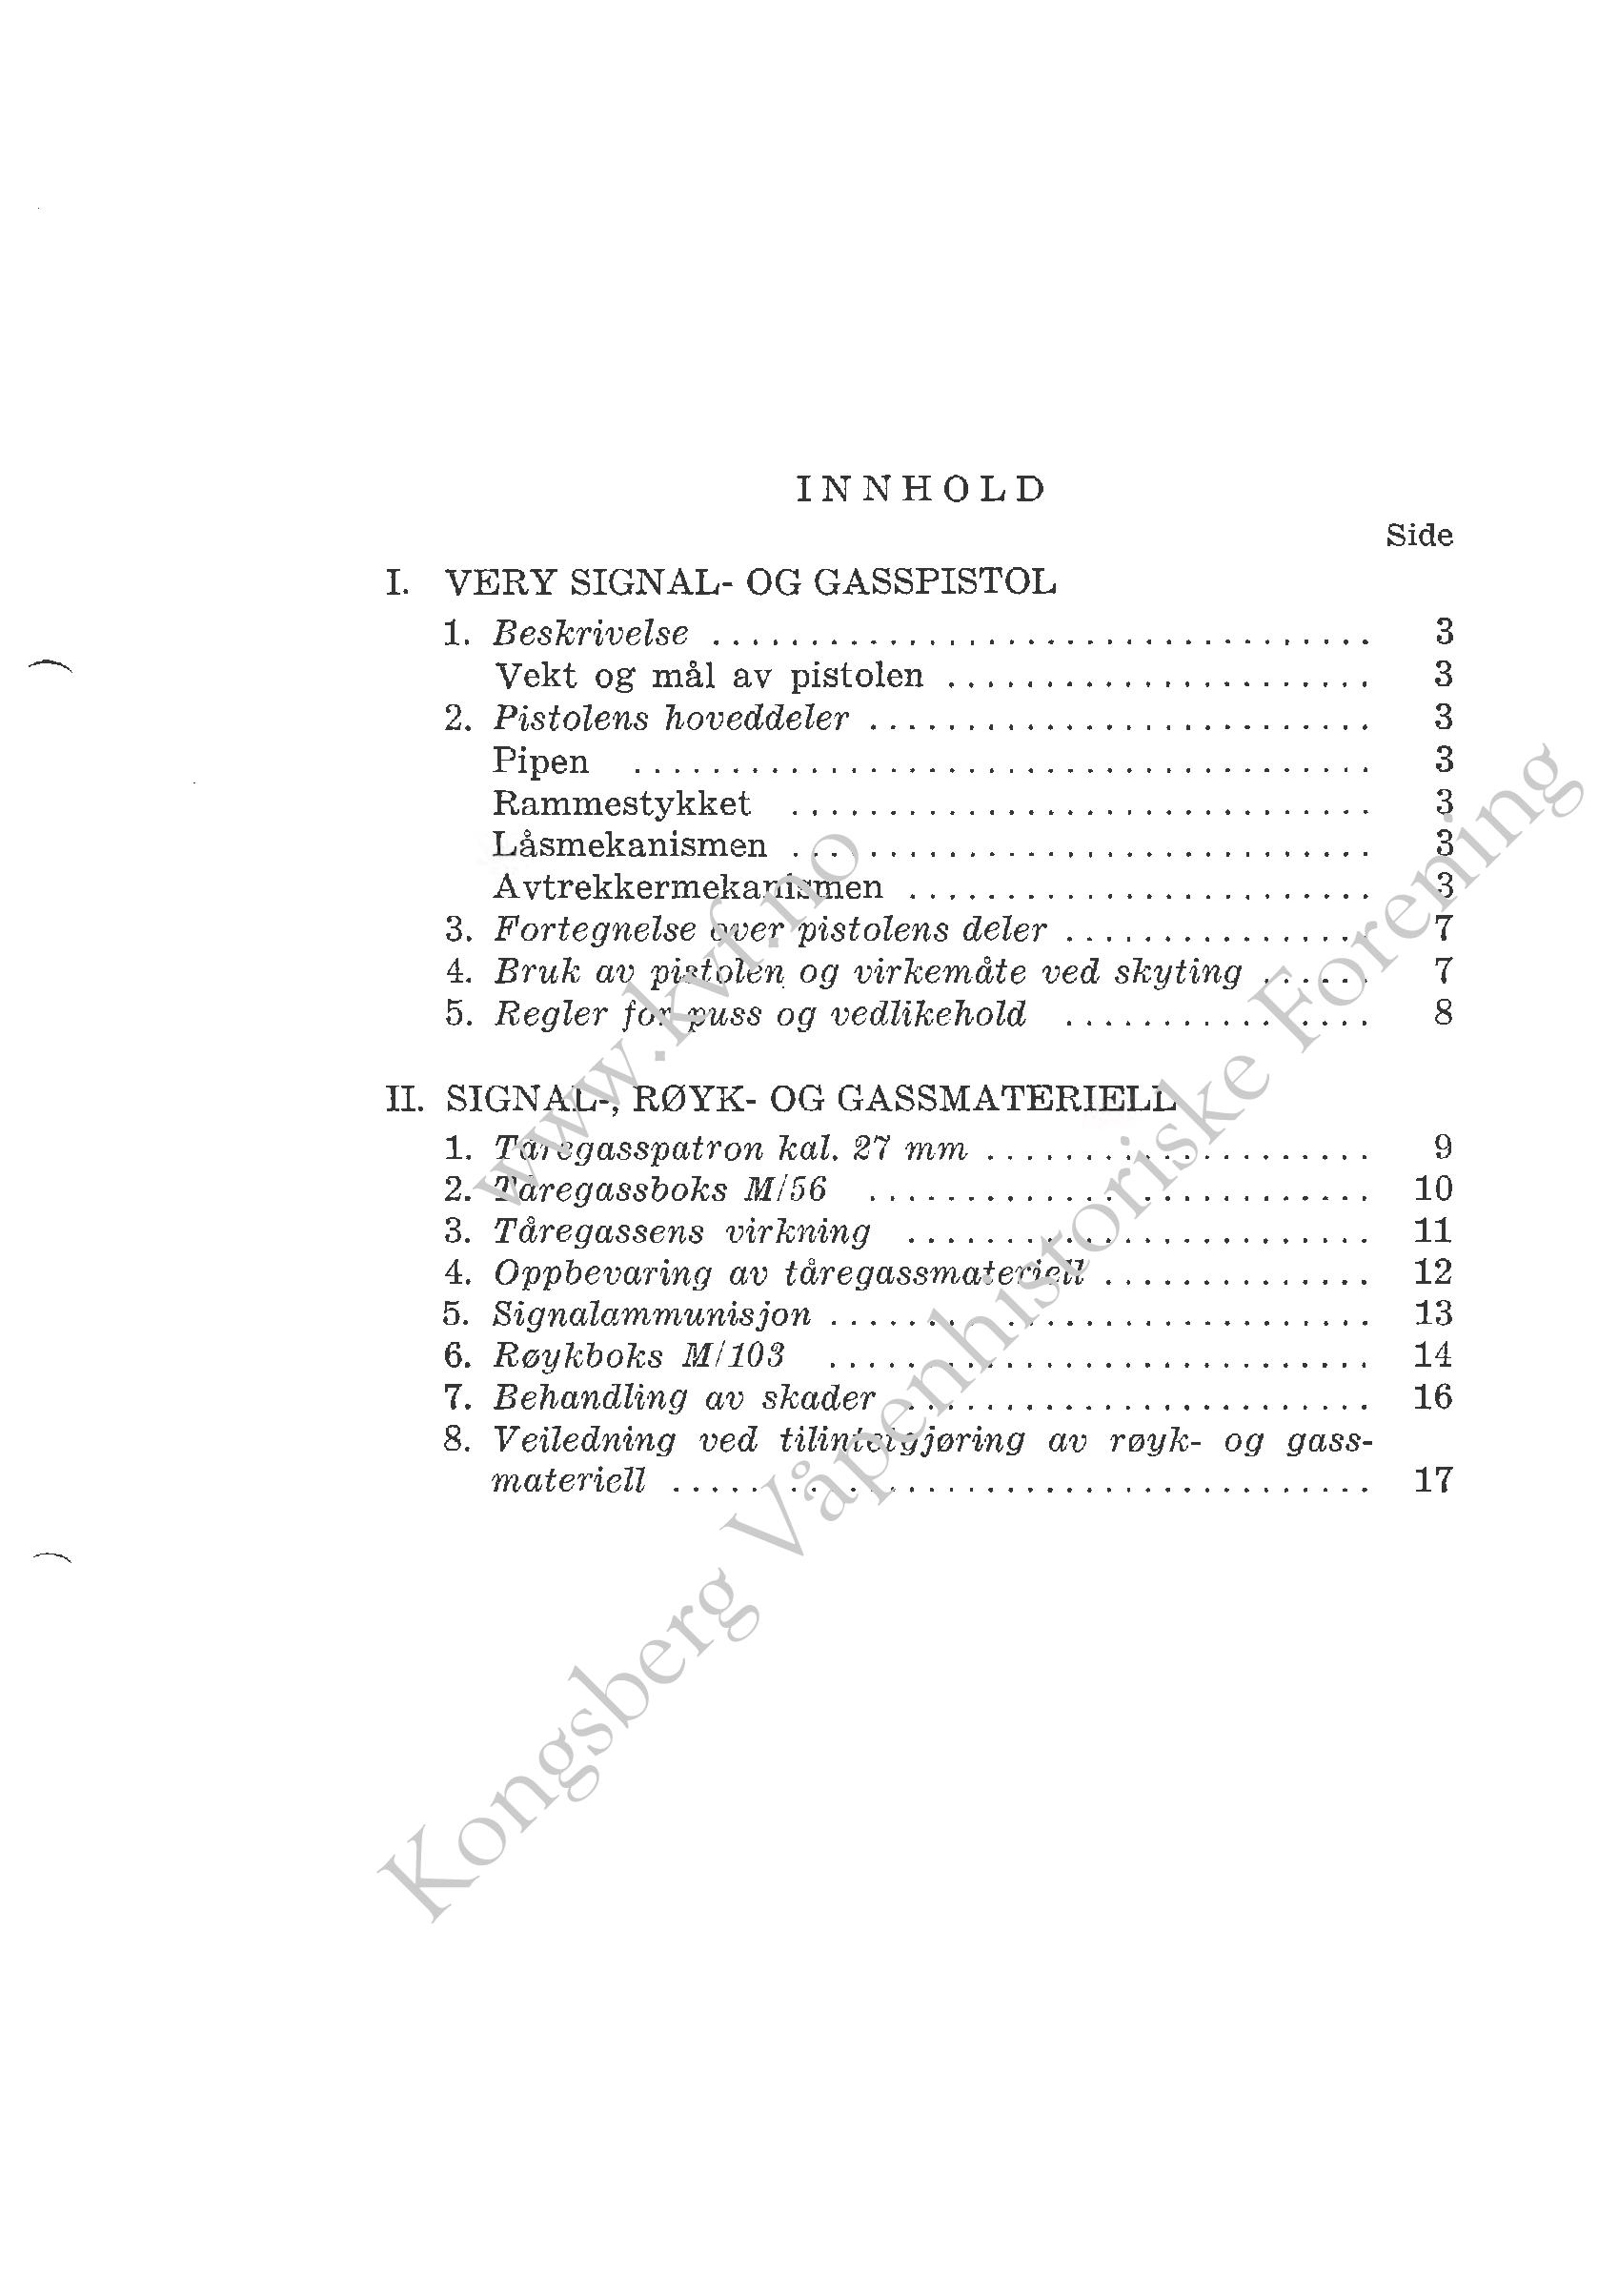 ./doc/reglement/Gasspistol/Beskrivelse-Signal-Gasspistol-1966-page-004.jpg